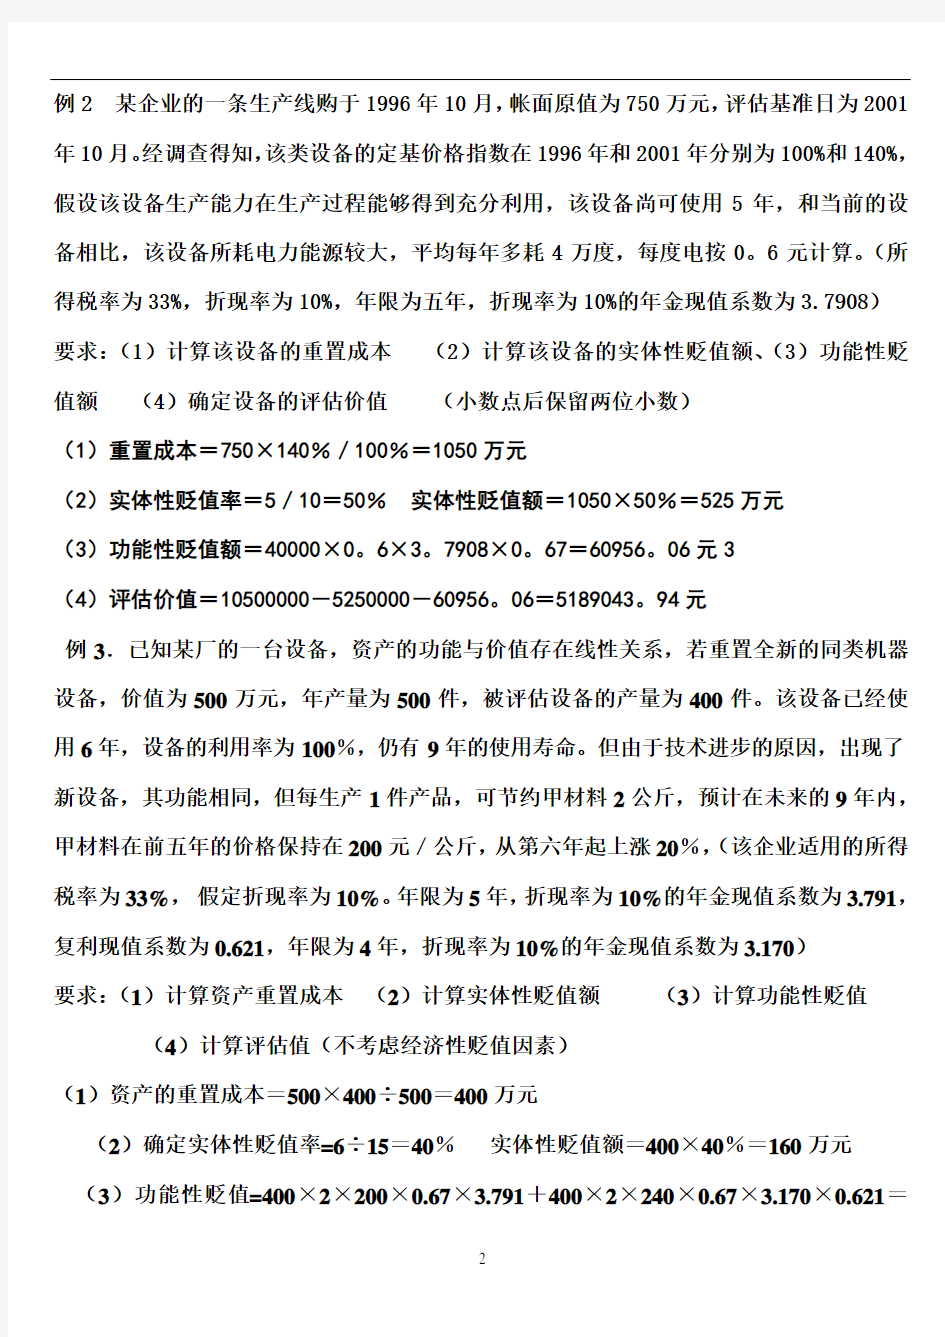 上海电视大学资产评估期中考试计算题